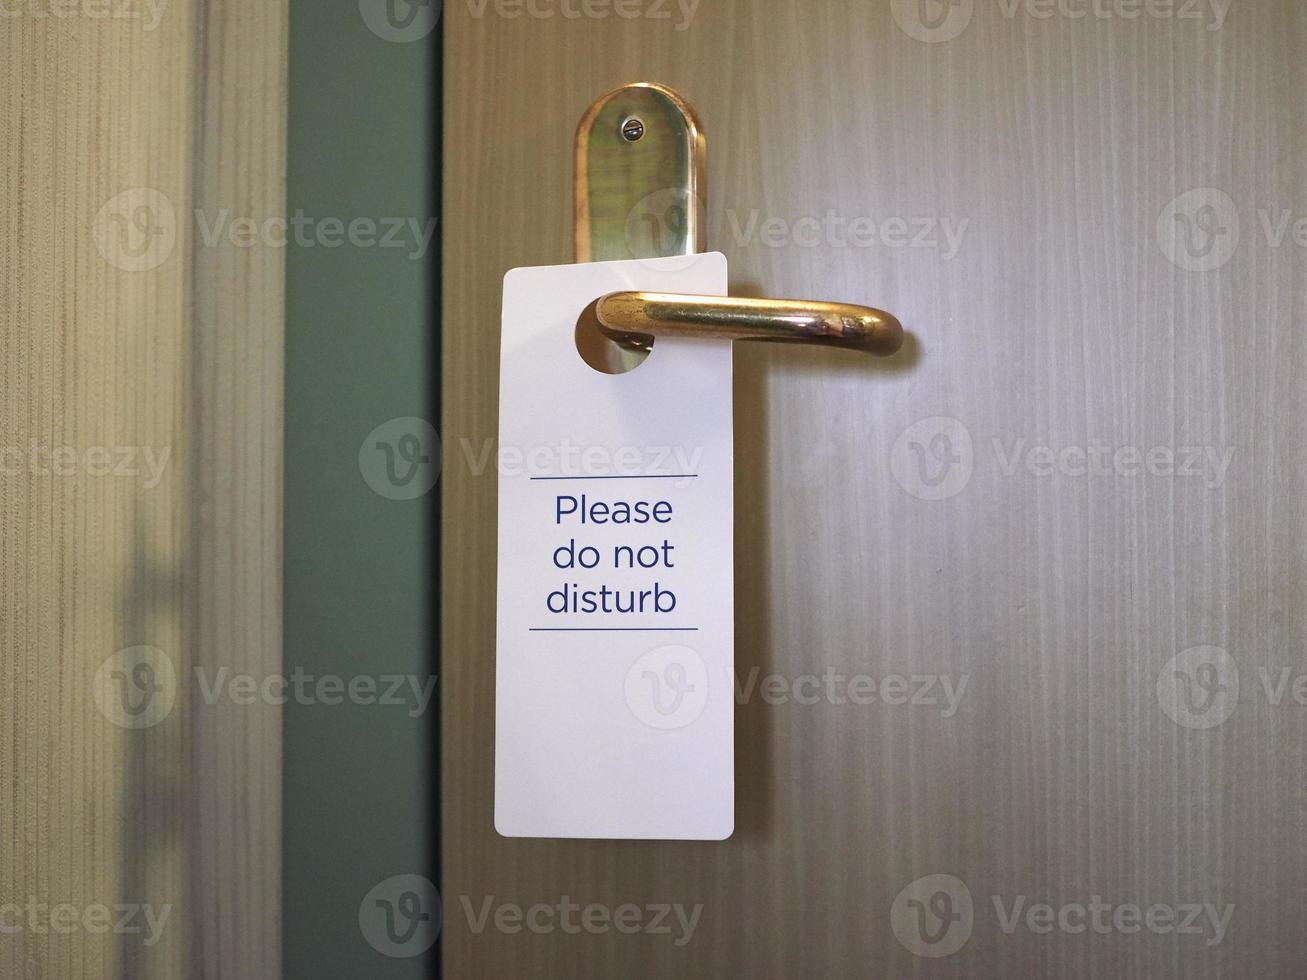 snälla stör inte skylten på hotellrumsdörren foto